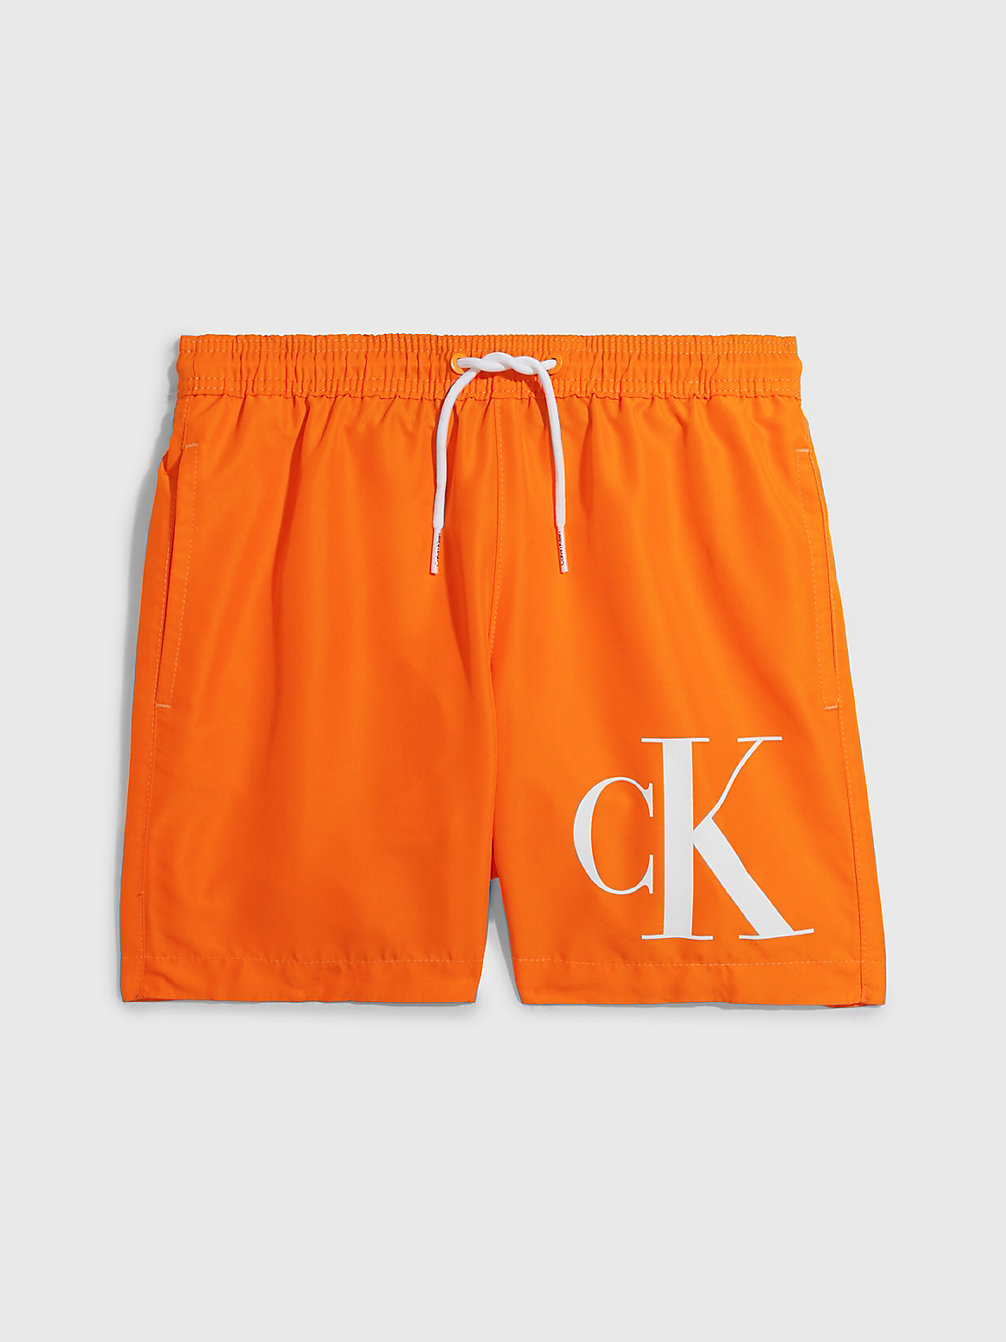 SUN KISSED ORANGE Badeshorts Für Jungen - CK Monogram undefined Jungen Calvin Klein